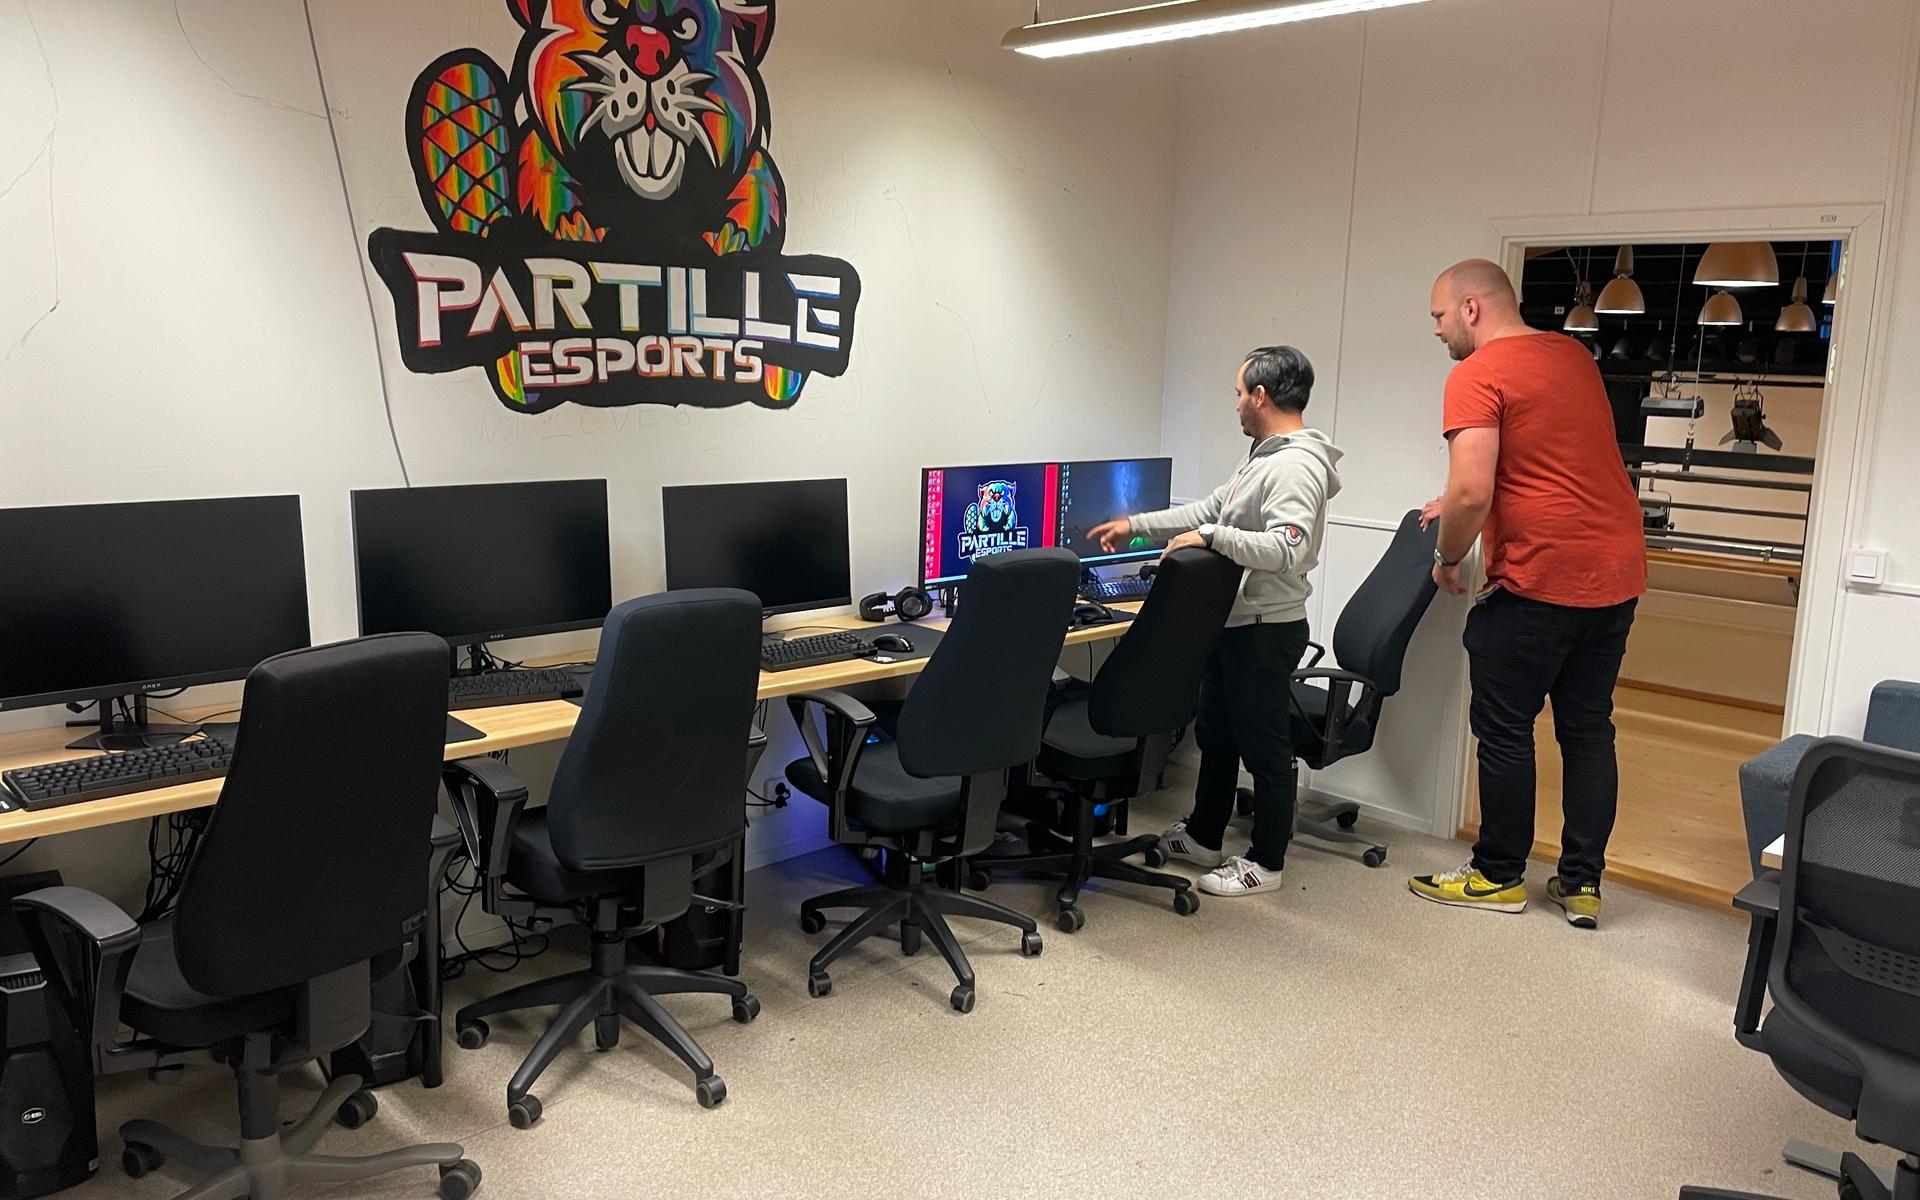 Sedan uppstarten 2019 har deras rum med datorer vuxit sig allt större. I somras fick väggen en logga, designad av deltagaren Liam Nordström, 17 år, och inom kort kommer ännu fler datorer installeras för spel. 